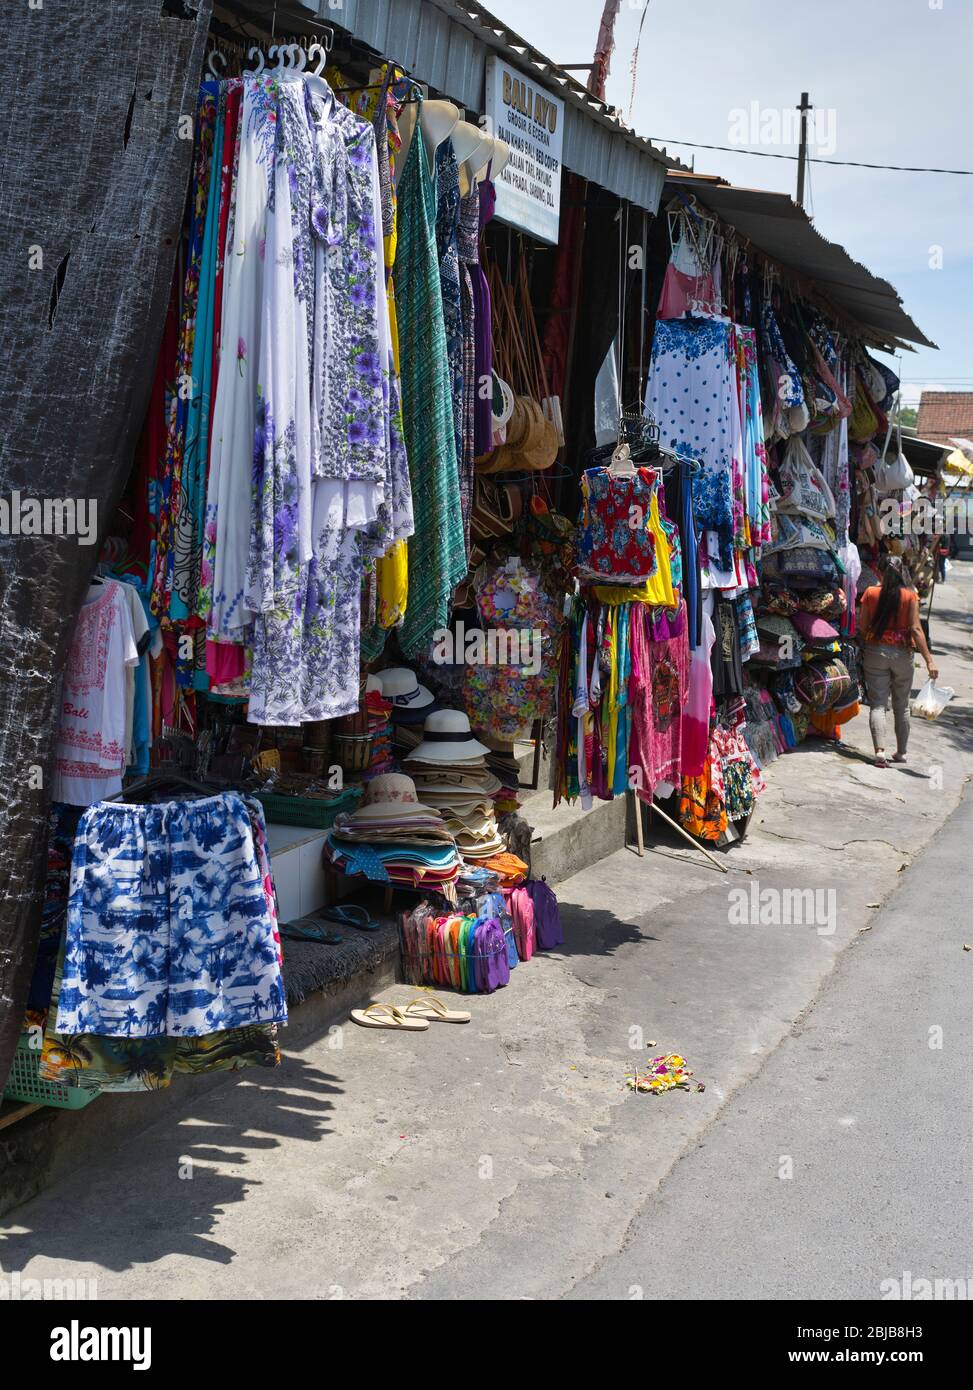 dh Pasar Seni Guwang Sukawati BALI INDONESIEN Tuchladen Displays Balinesische Kunst Handwerk Markt Straße südost asien Kleidung Stockfoto